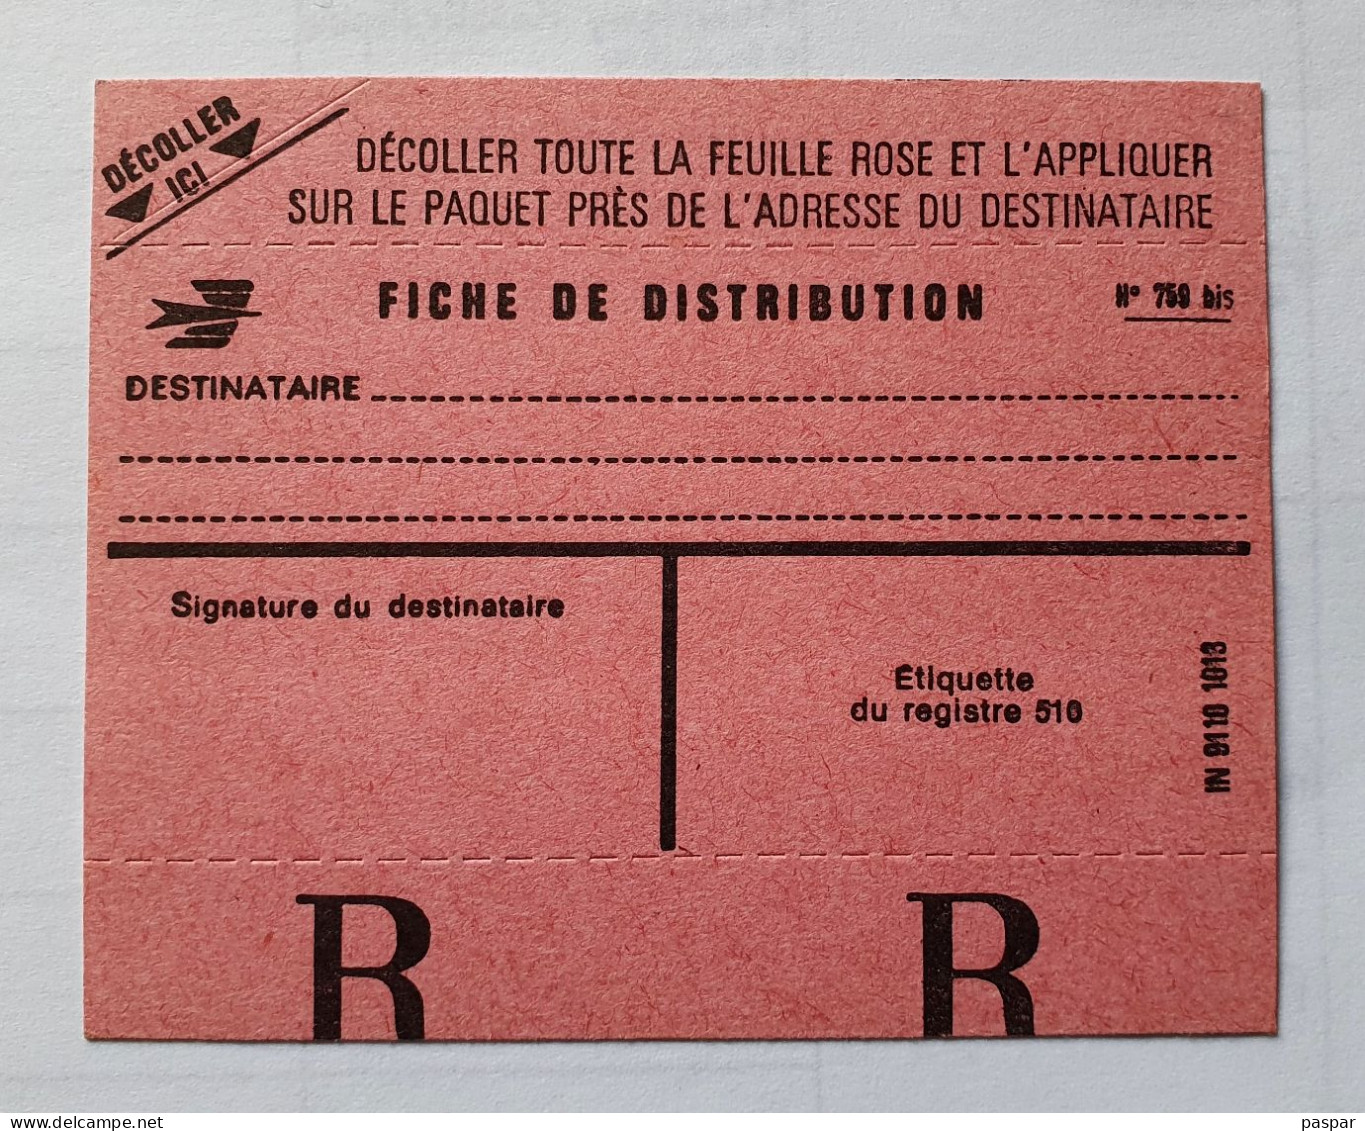 Fiche De Distribution N°759 Bis Vierge - Poste France - Documents De La Poste